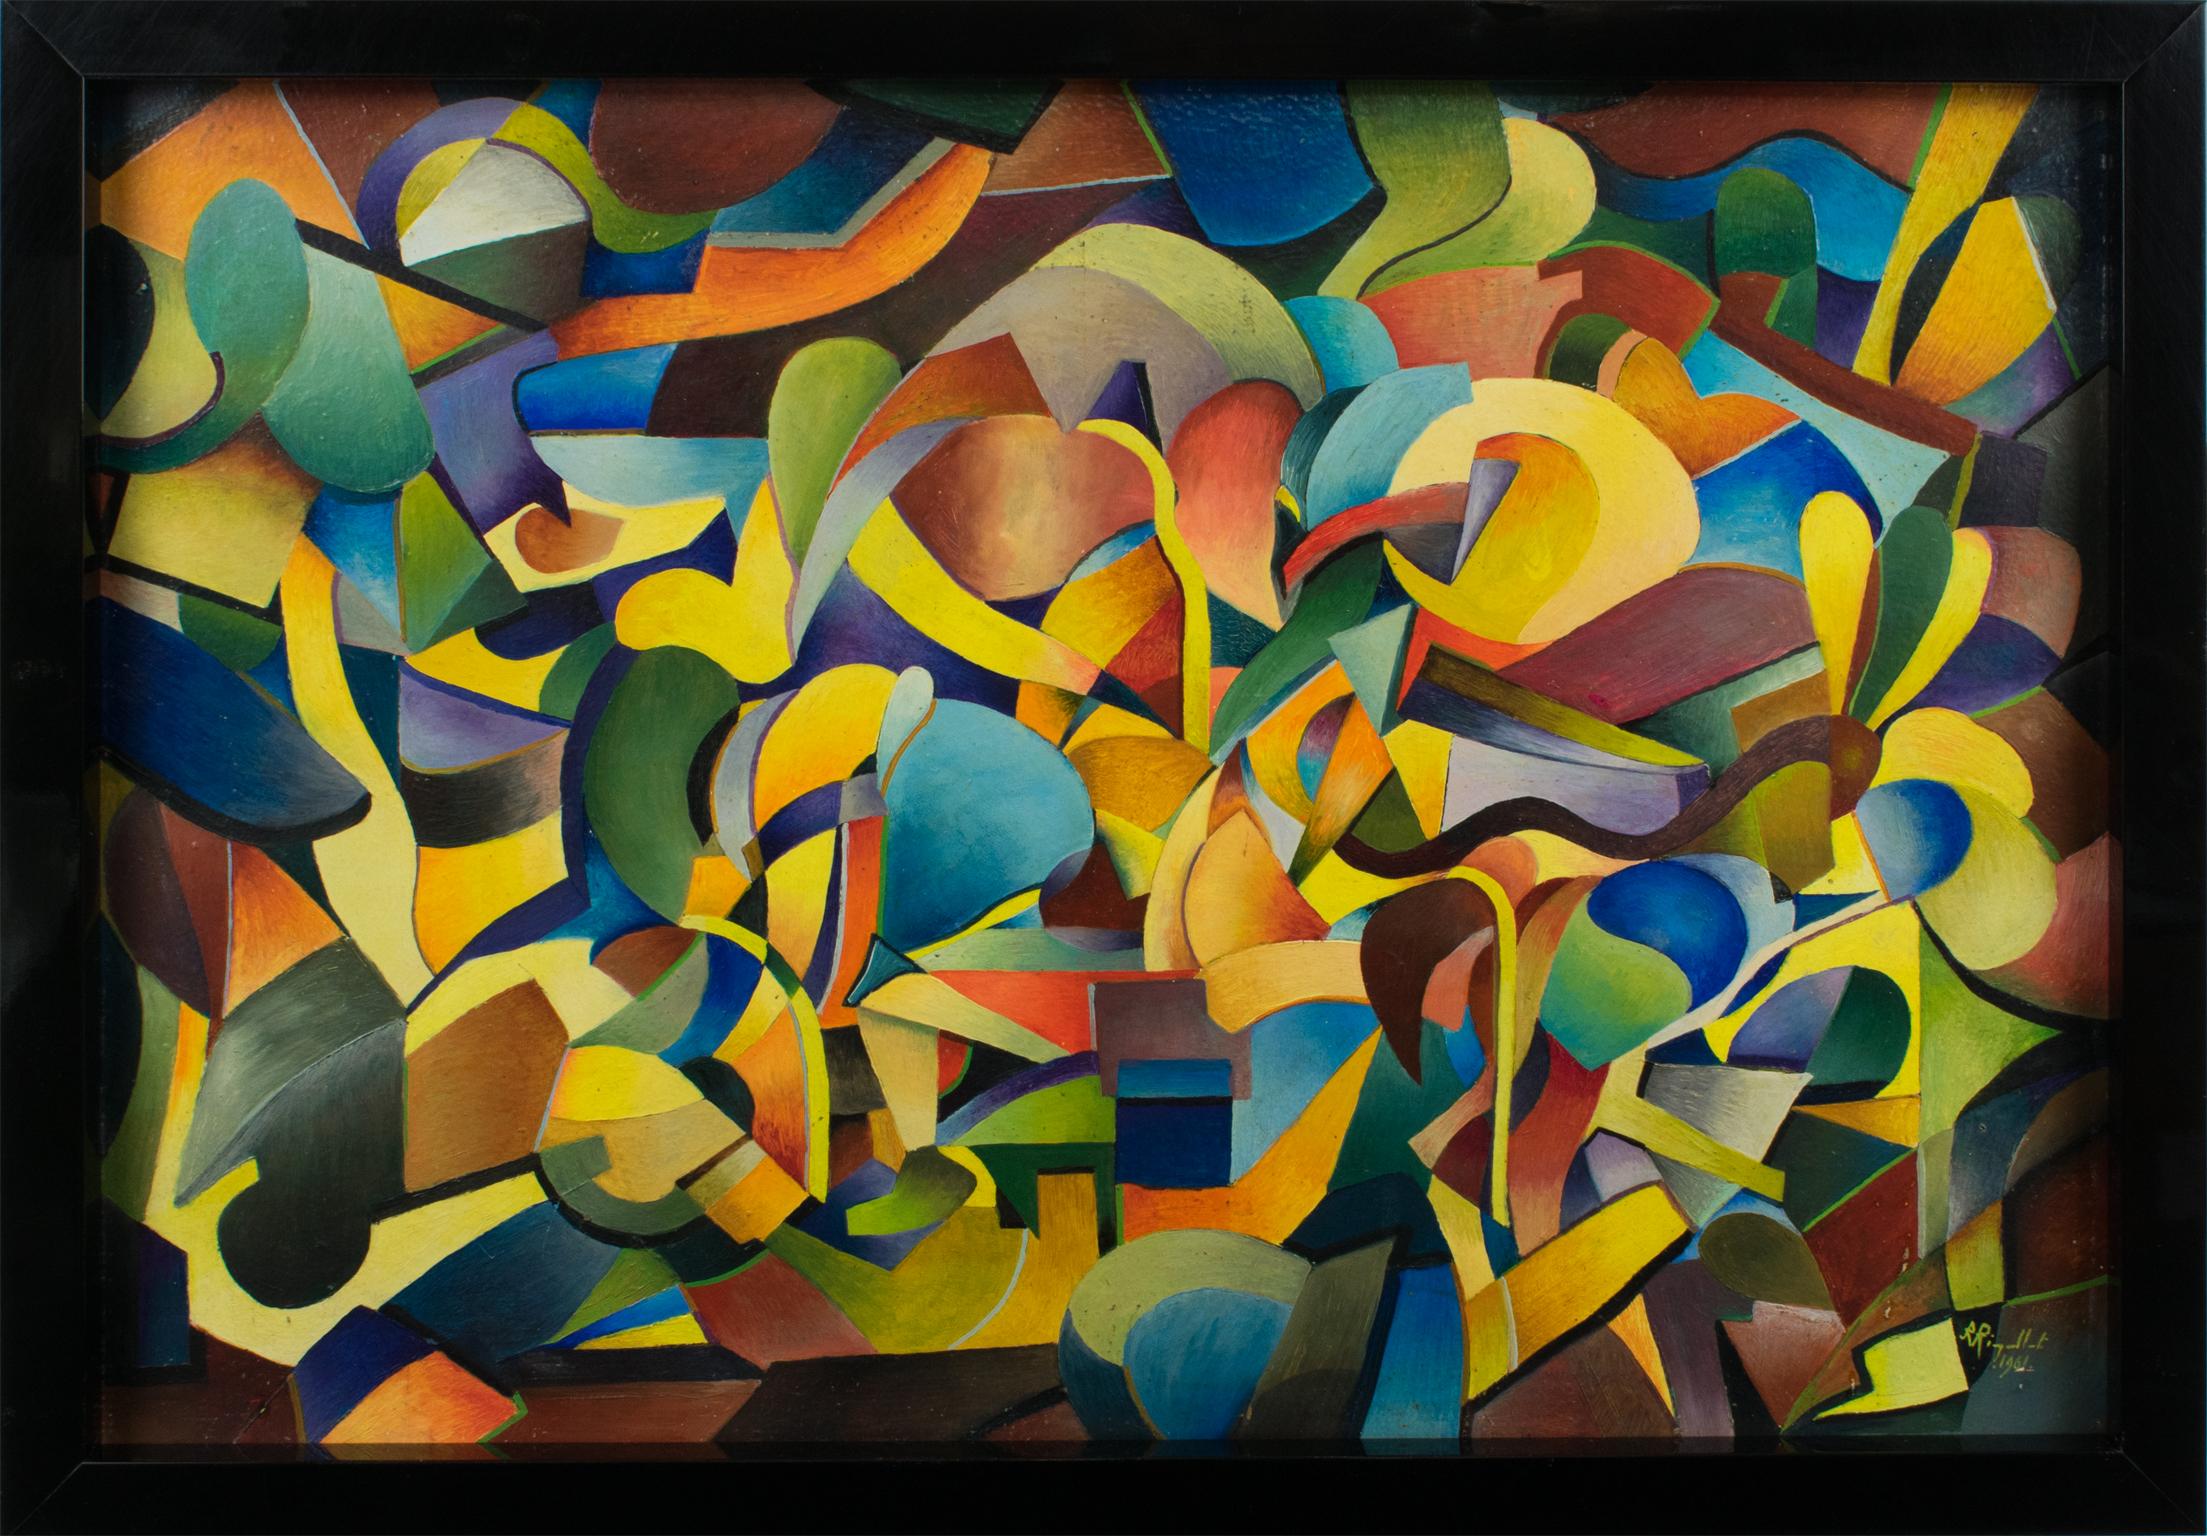 Dieses hypnotisierende postkubistische und koloristische abstrakte Ölgemälde auf Karton wurde von A. Rigollot (Frankreich, 20. Jahrhundert) entworfen.
Koloristische Gemälde zeichnen sich durch einen intensiven Farbgebrauch aus, der zum dominierenden